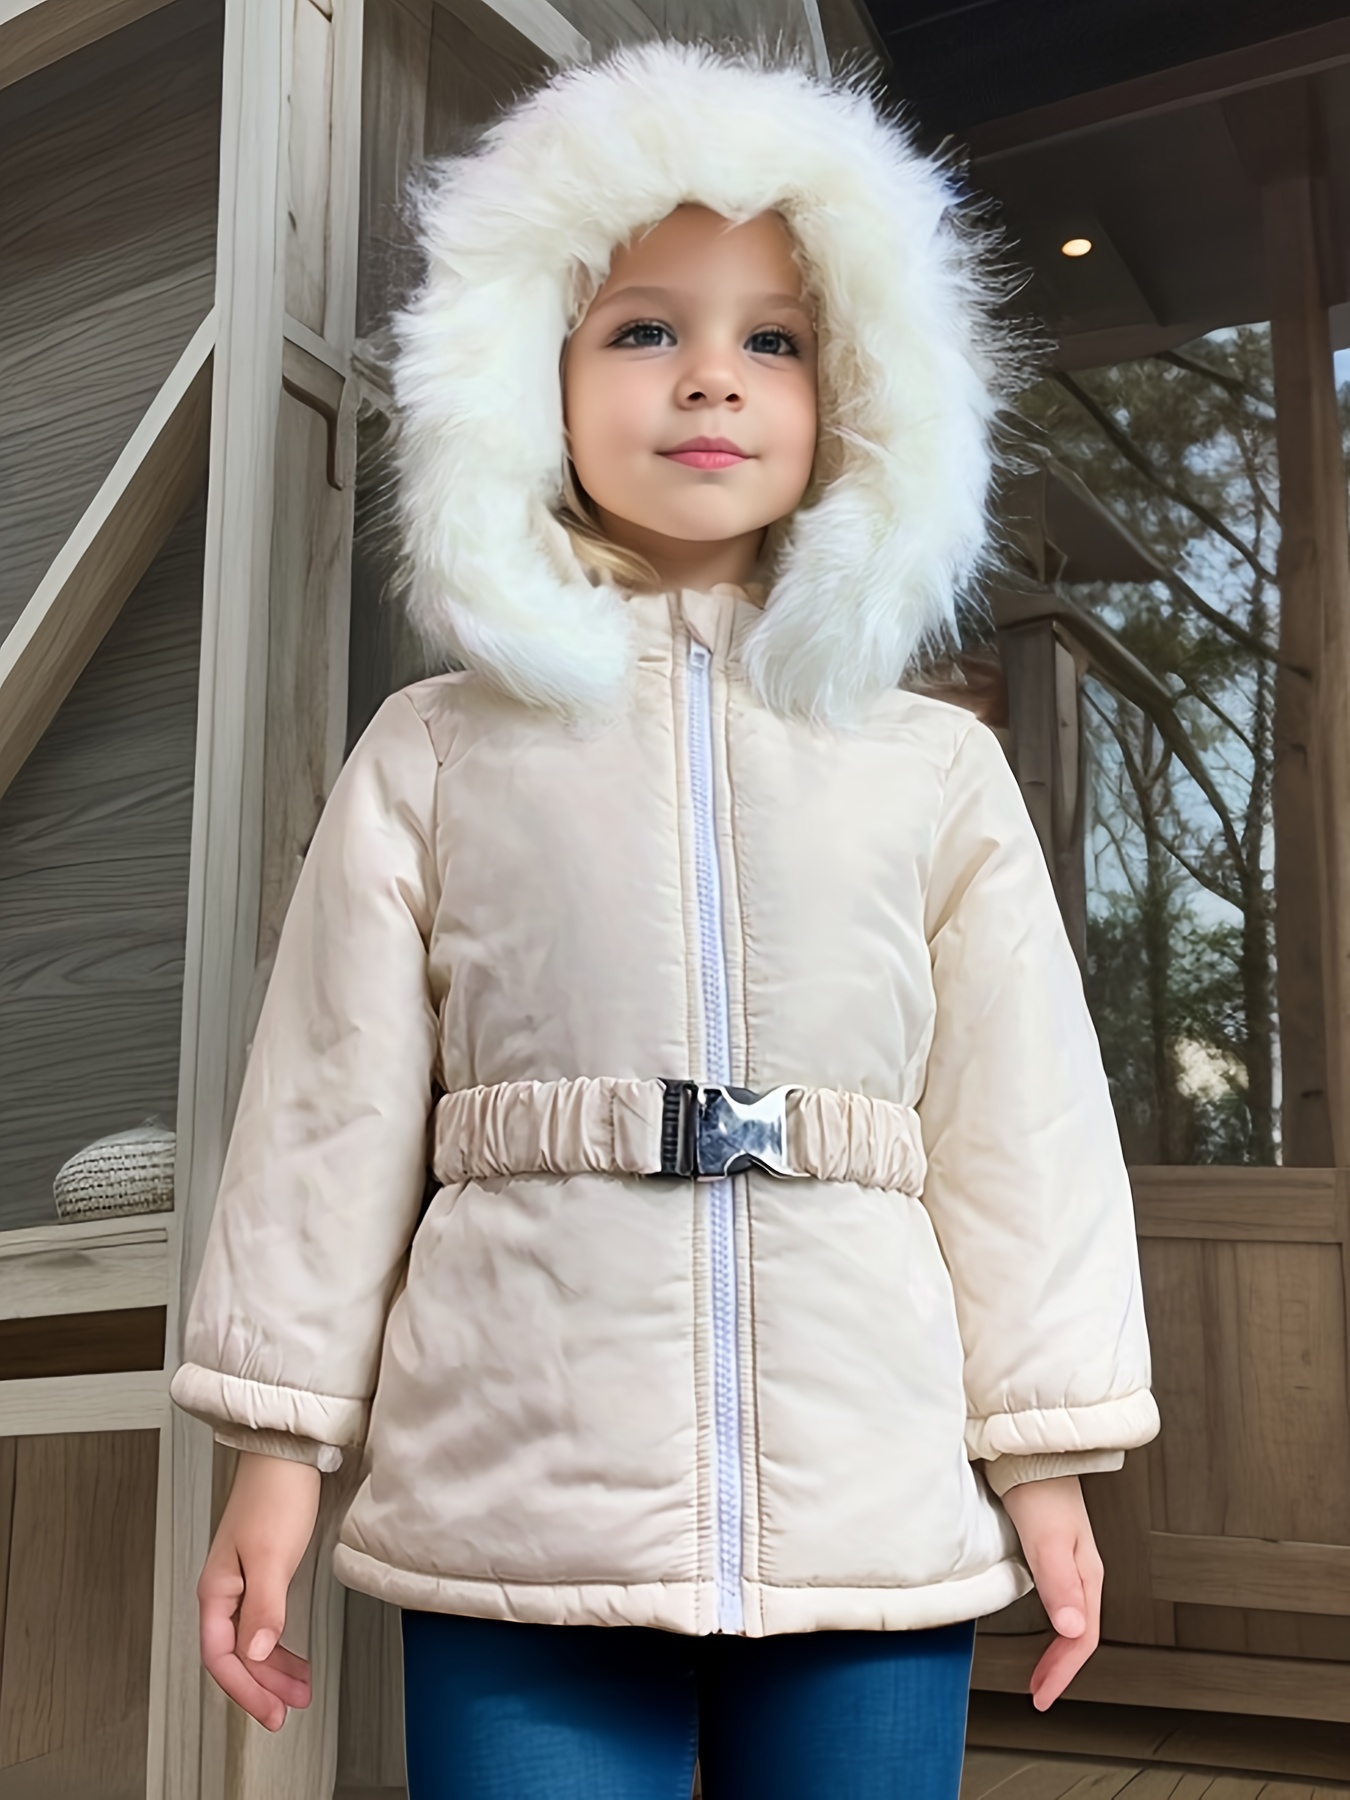 Imperial Shop Online Plumífero de niña con capucha e inserciones con efecto  pelo Sitio web oficial